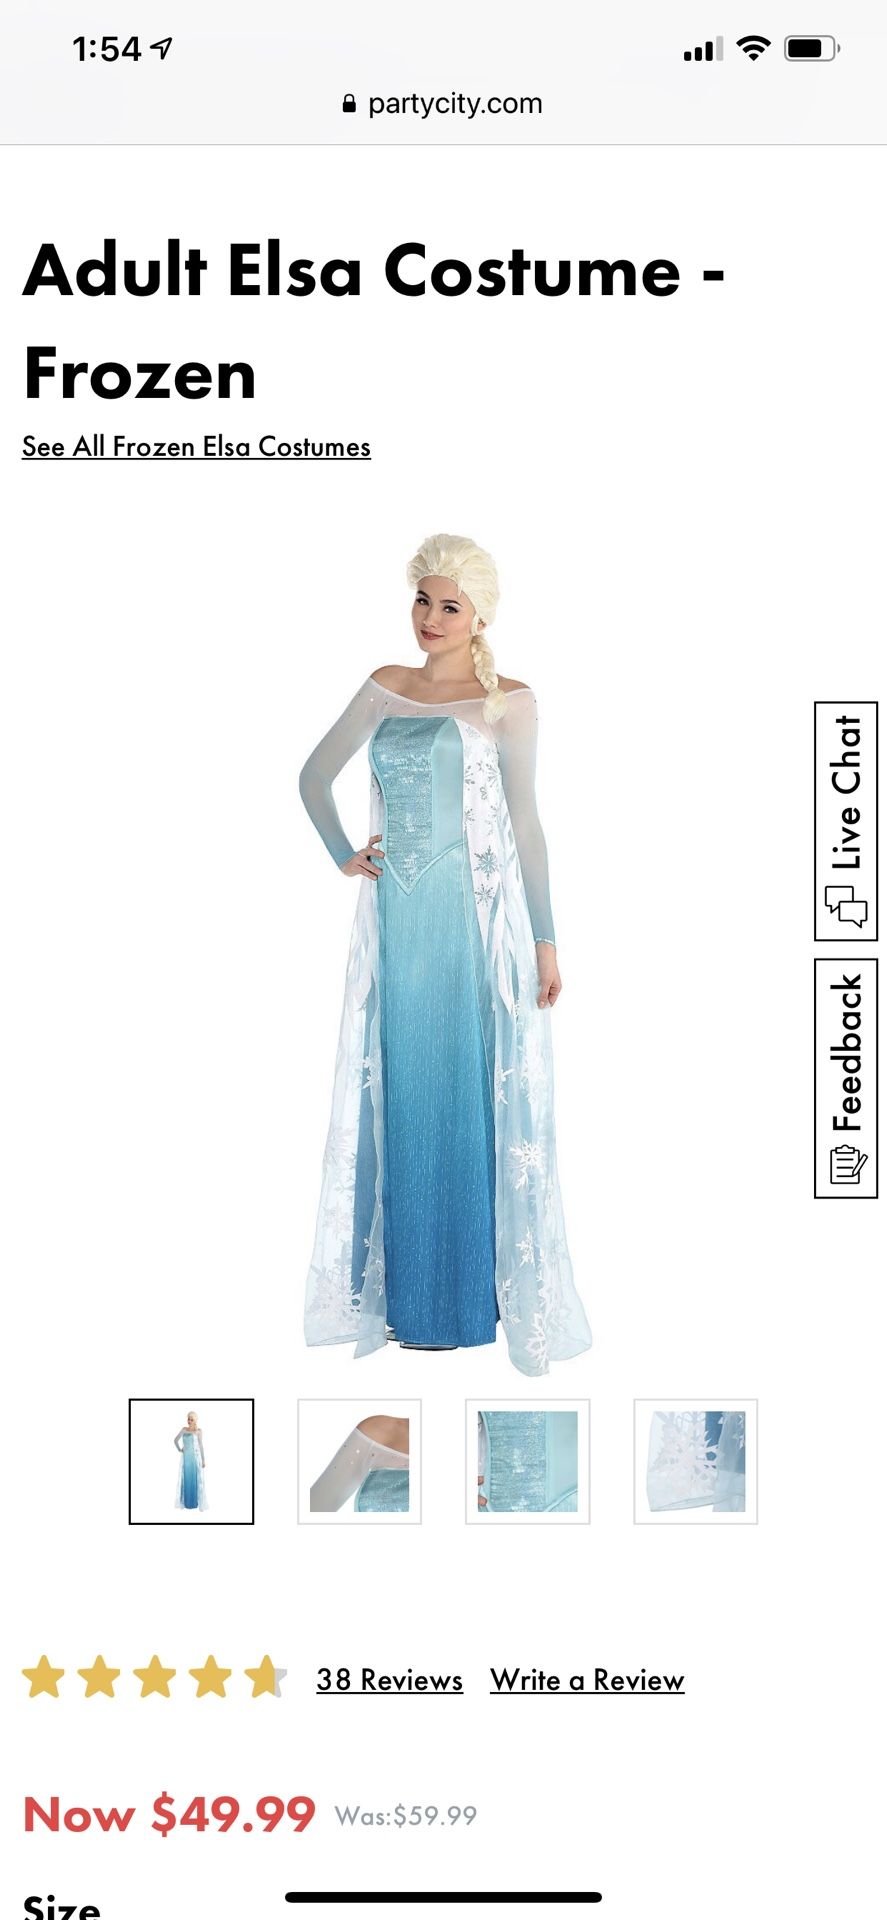 Adult Elsa costume